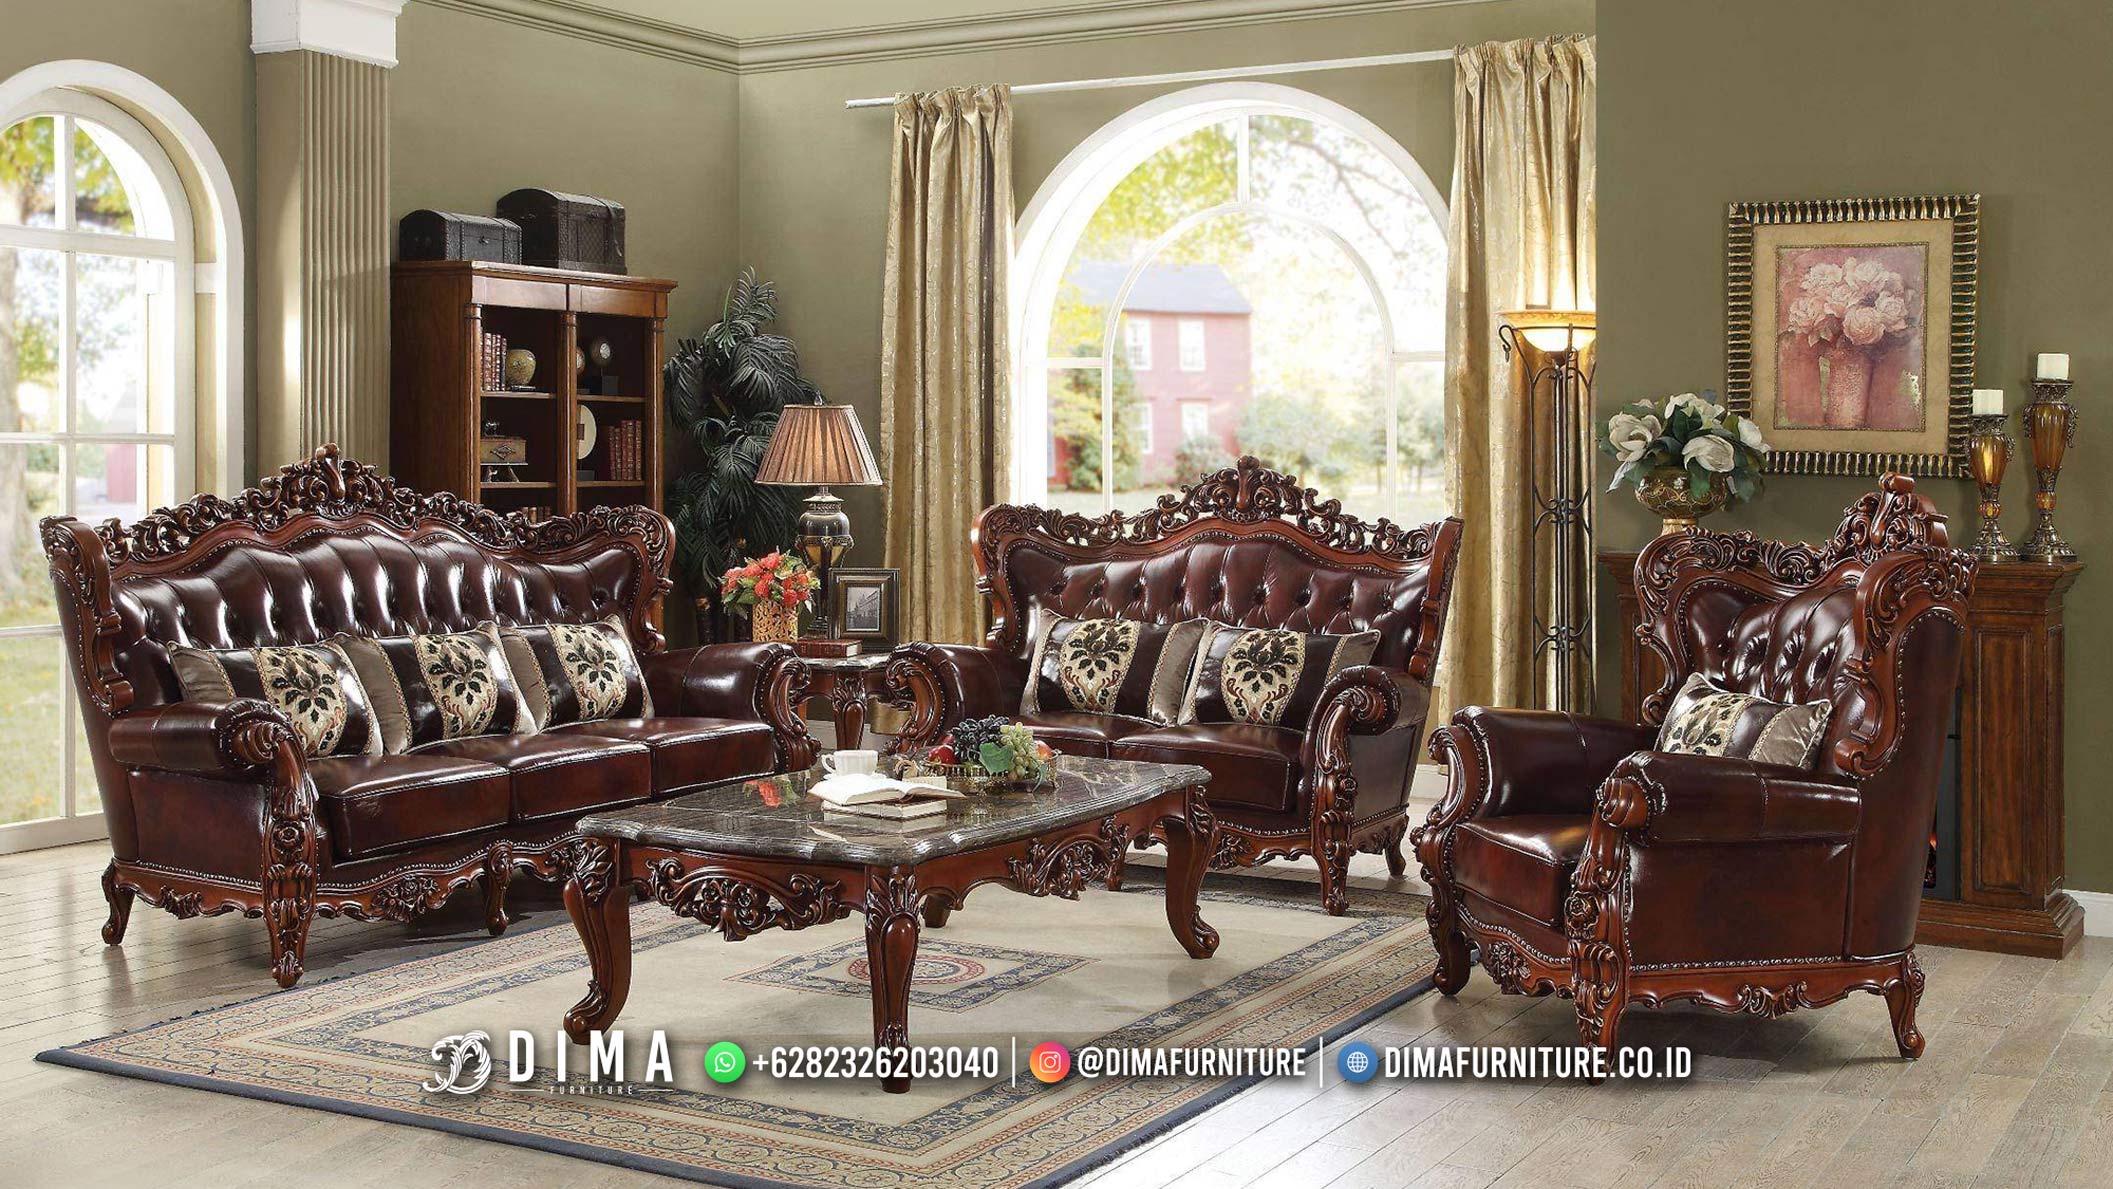 Sofa Tamu Mewah Ukiran Jati Jepara Luxury Details Carving Shinning BM149